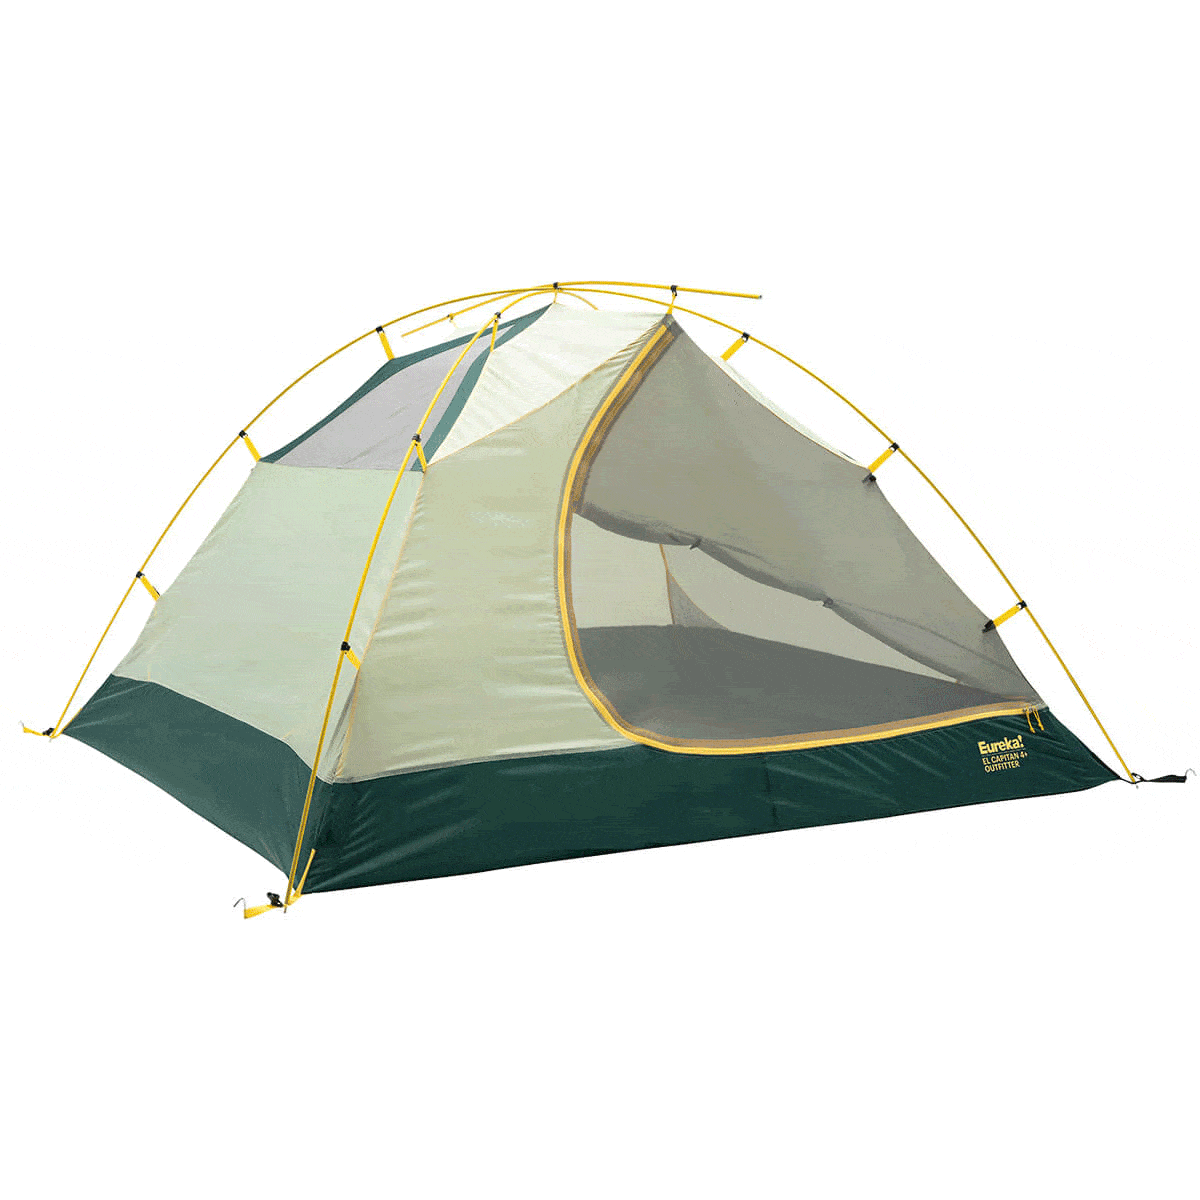 Eureka! El Capitan 4+ Outfitter Tent with screen door opening